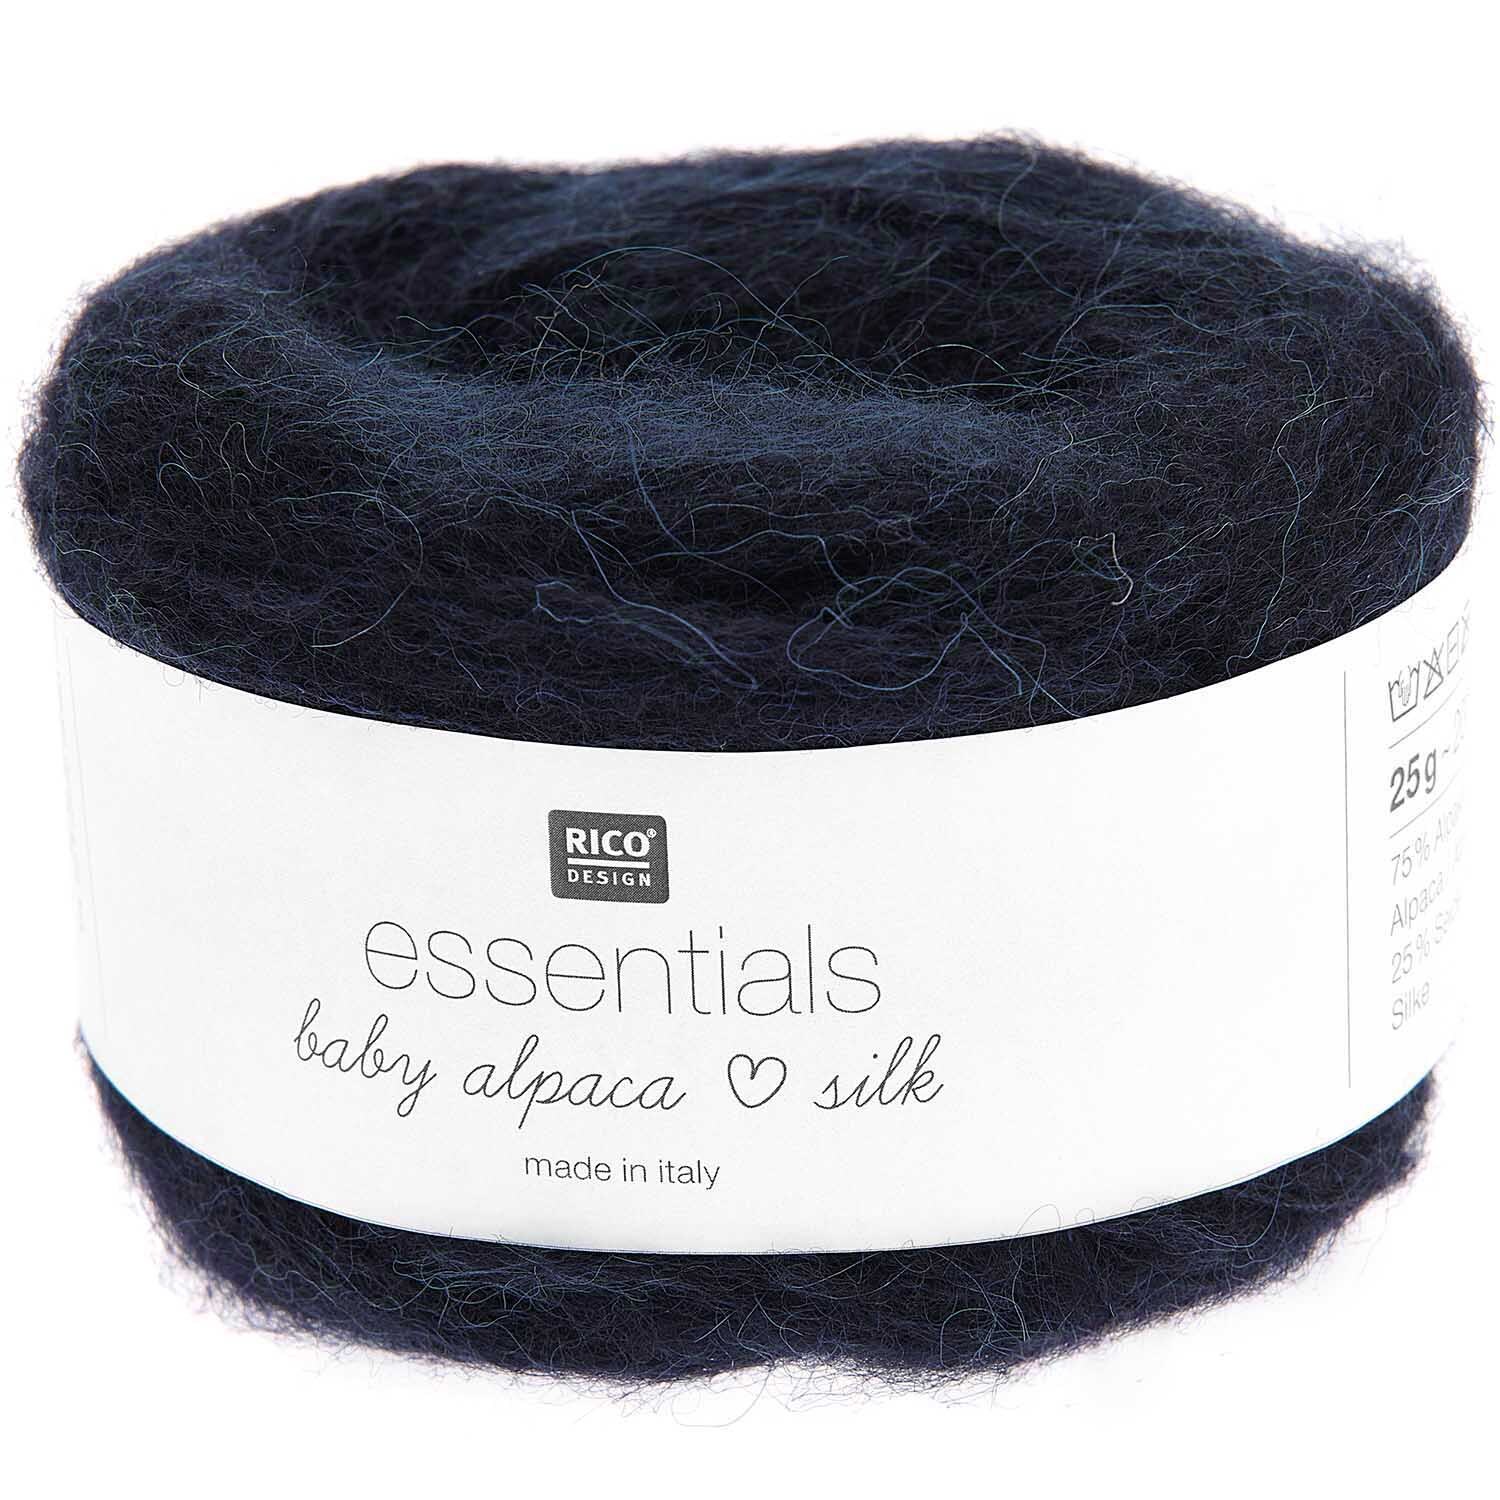 Essentials Baby Alpaca Loves Silk